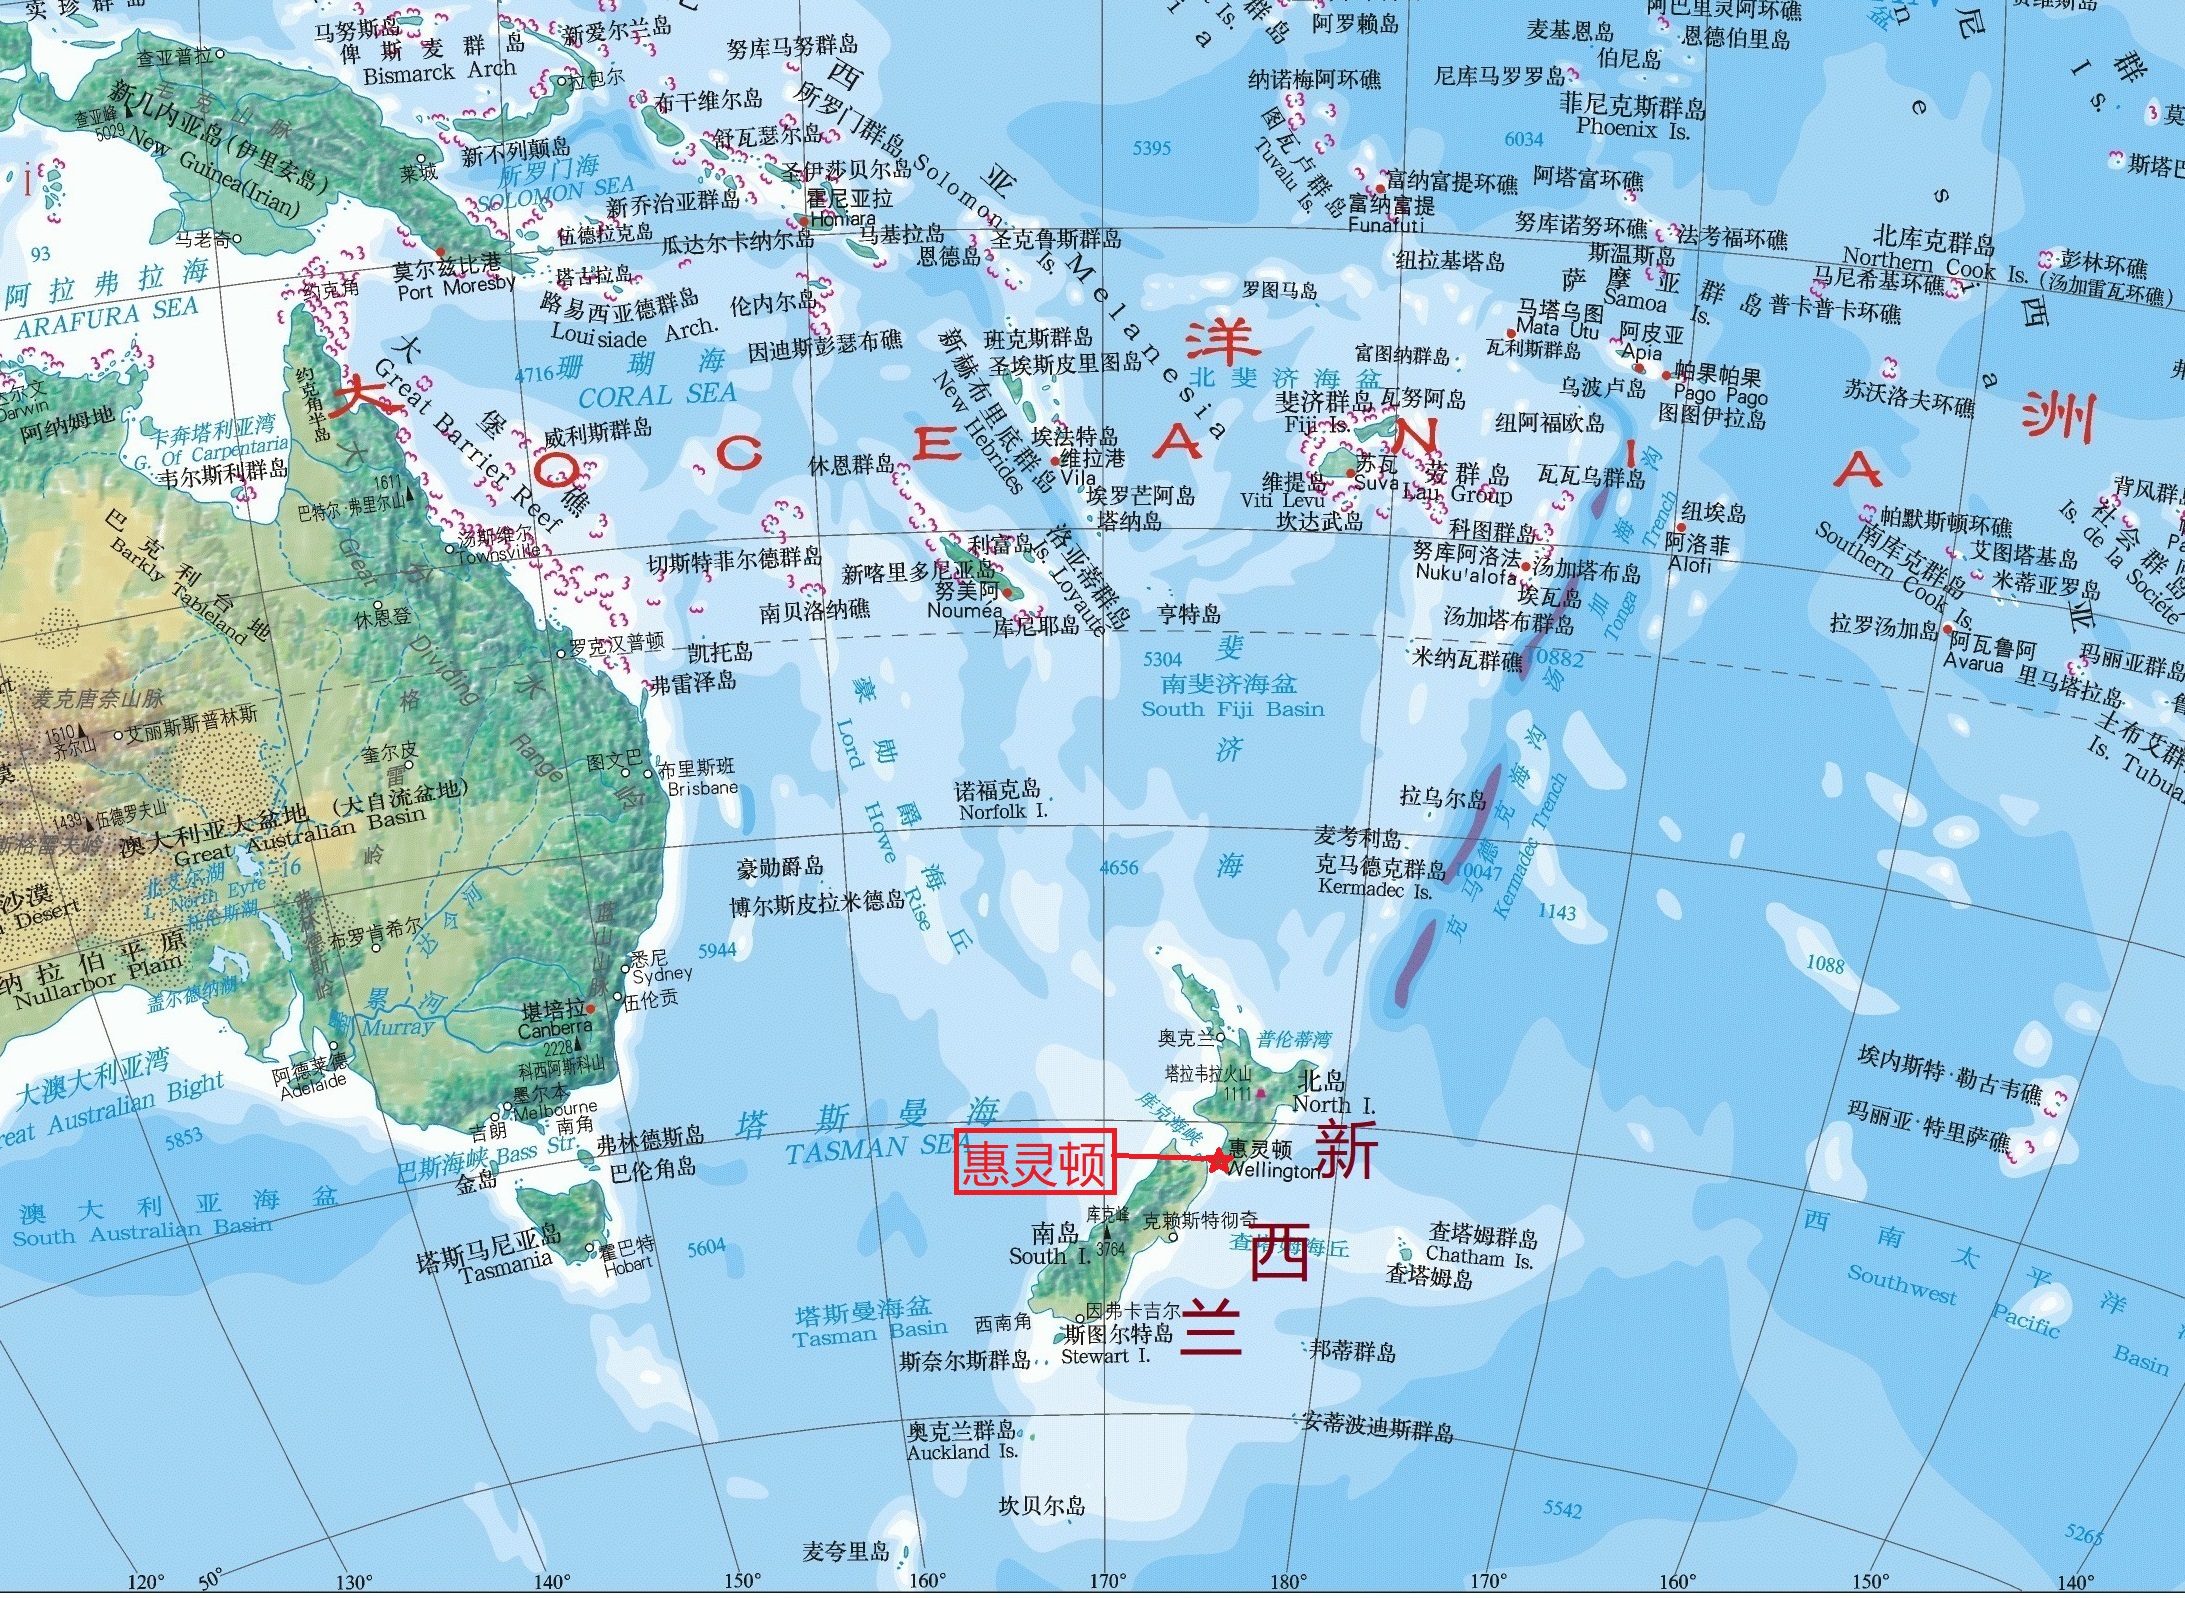 新西兰的首都是哪里 新西兰的首都英文